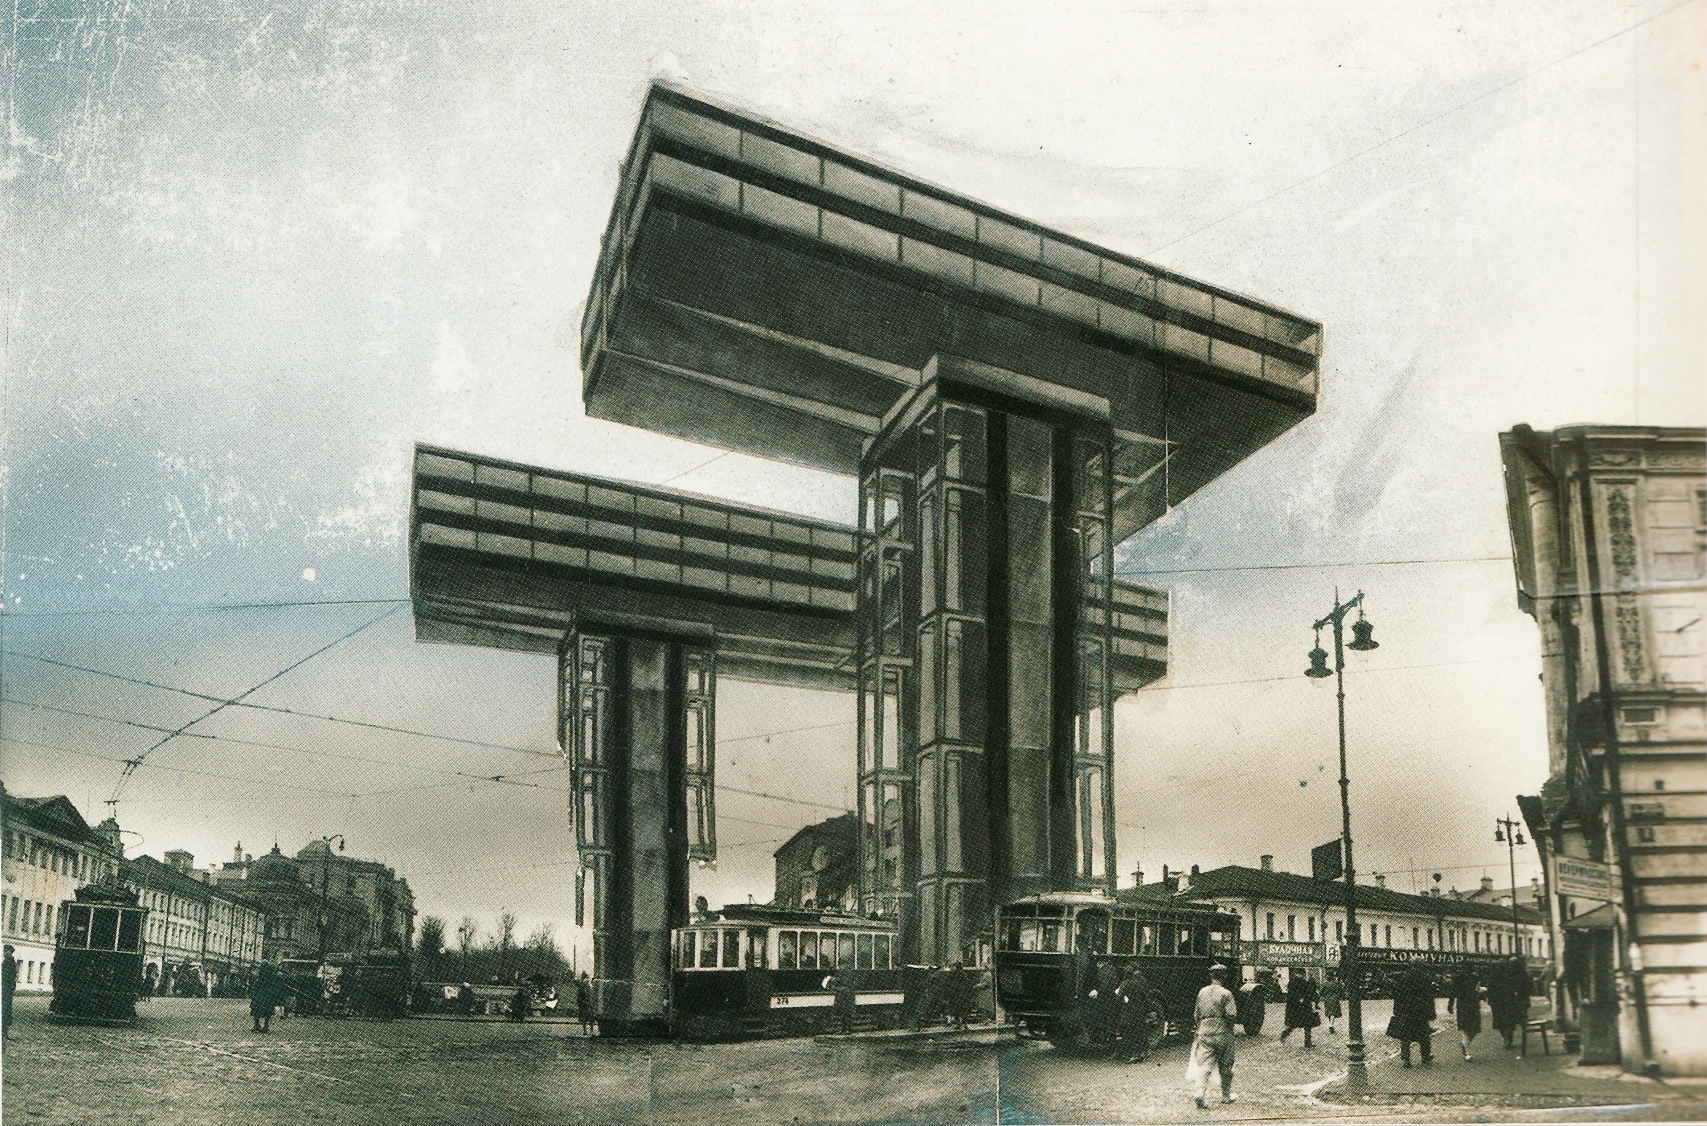 Л. Лисицкий. Проект горизонтального небоскреба («Заоблачного утюга») на столбах, поднятого над застройкой старой Москвы. 1923—1925 годы.